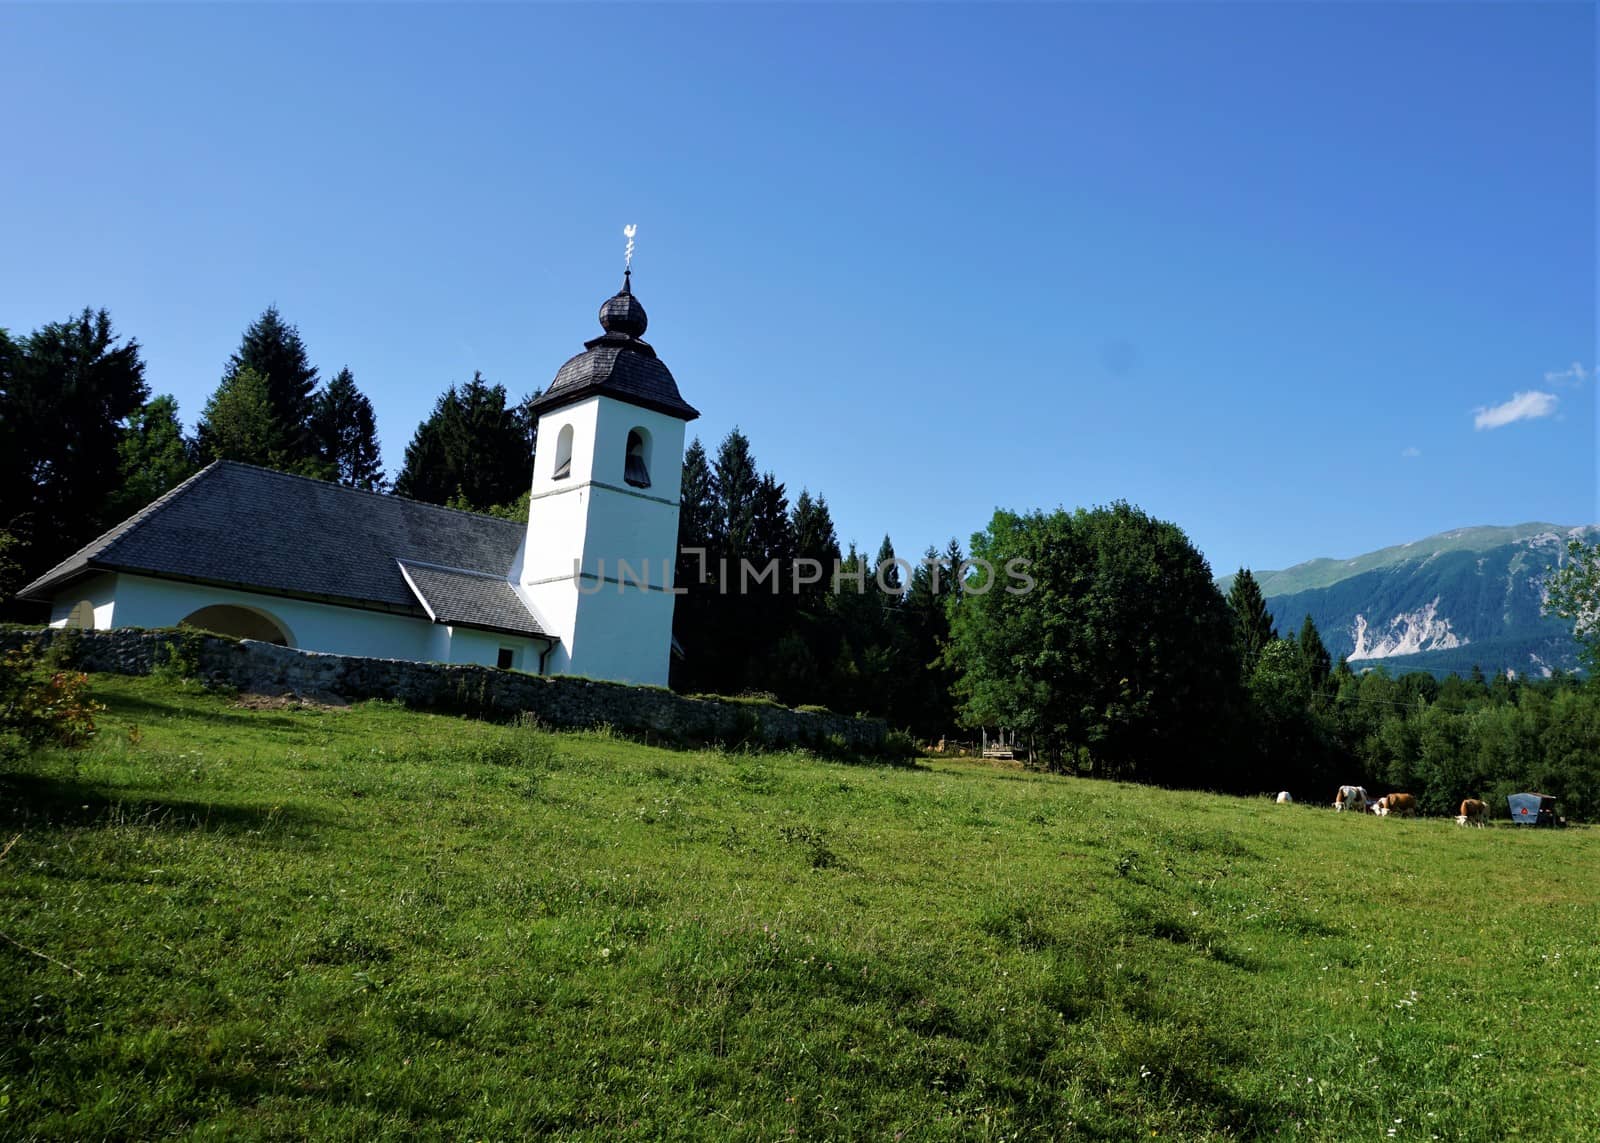 Cercev Sv Katarina in Zasip near Bled by pisces2386